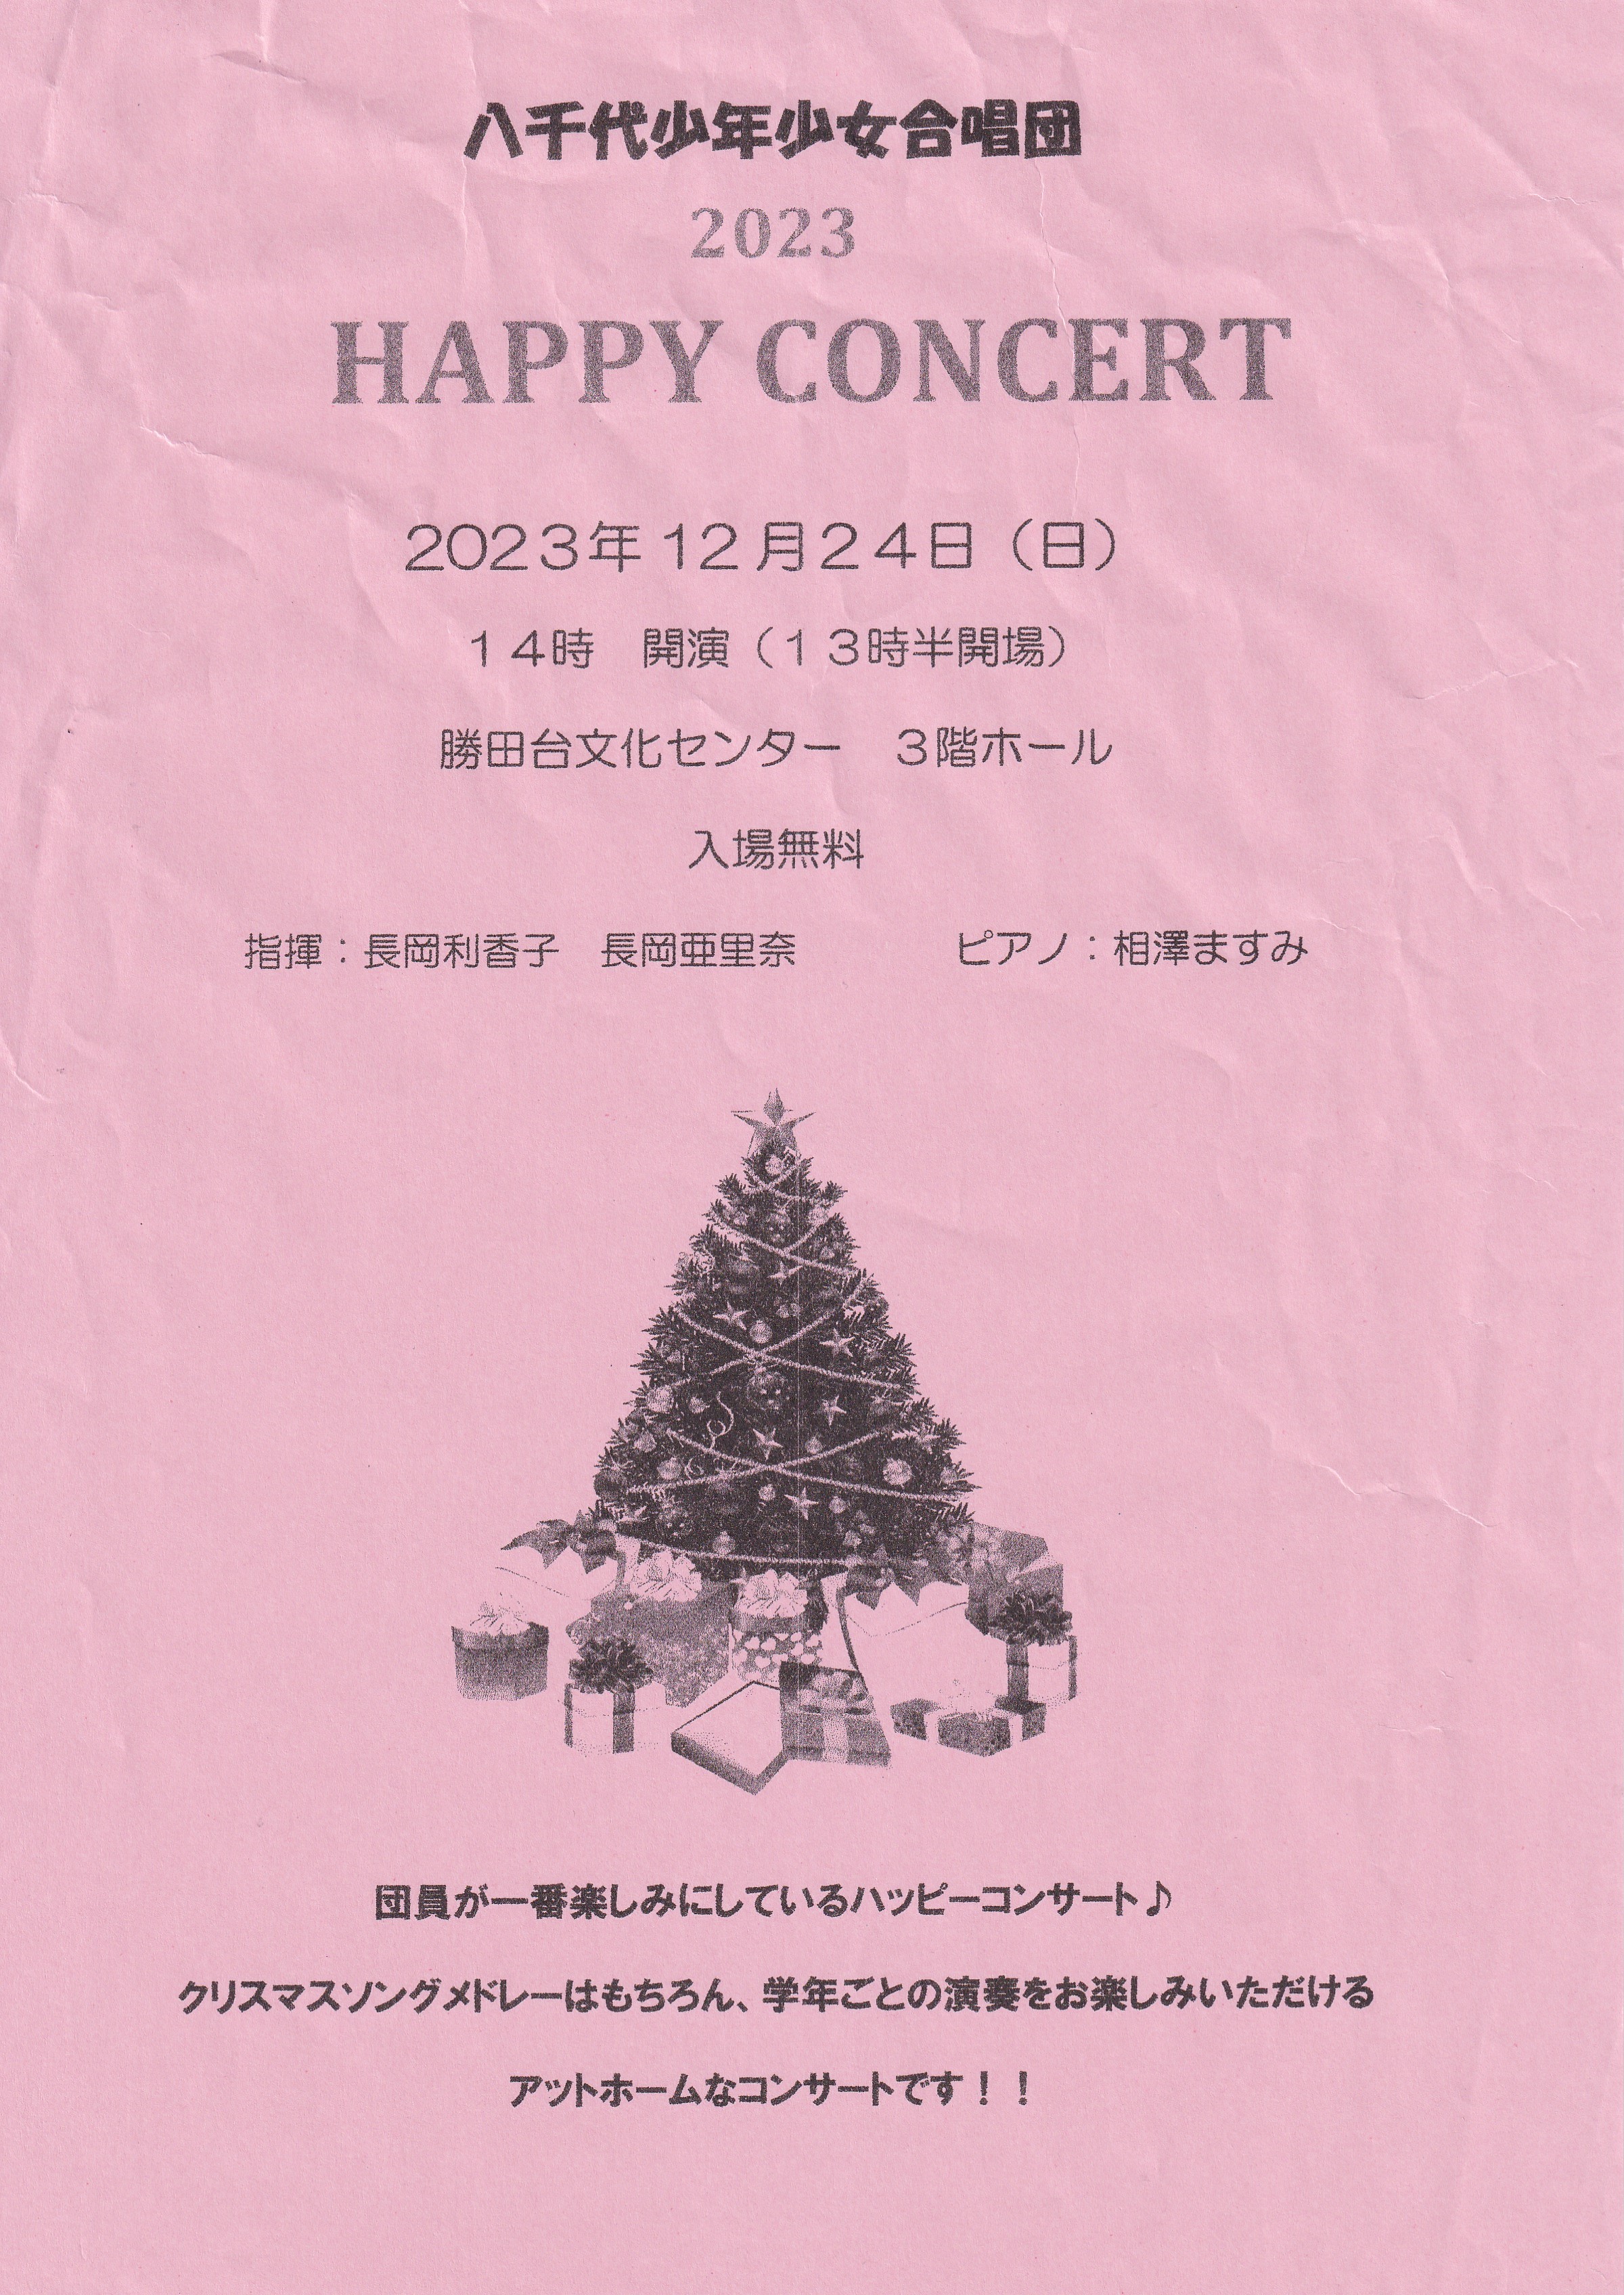 Happy Concert 2023🔍